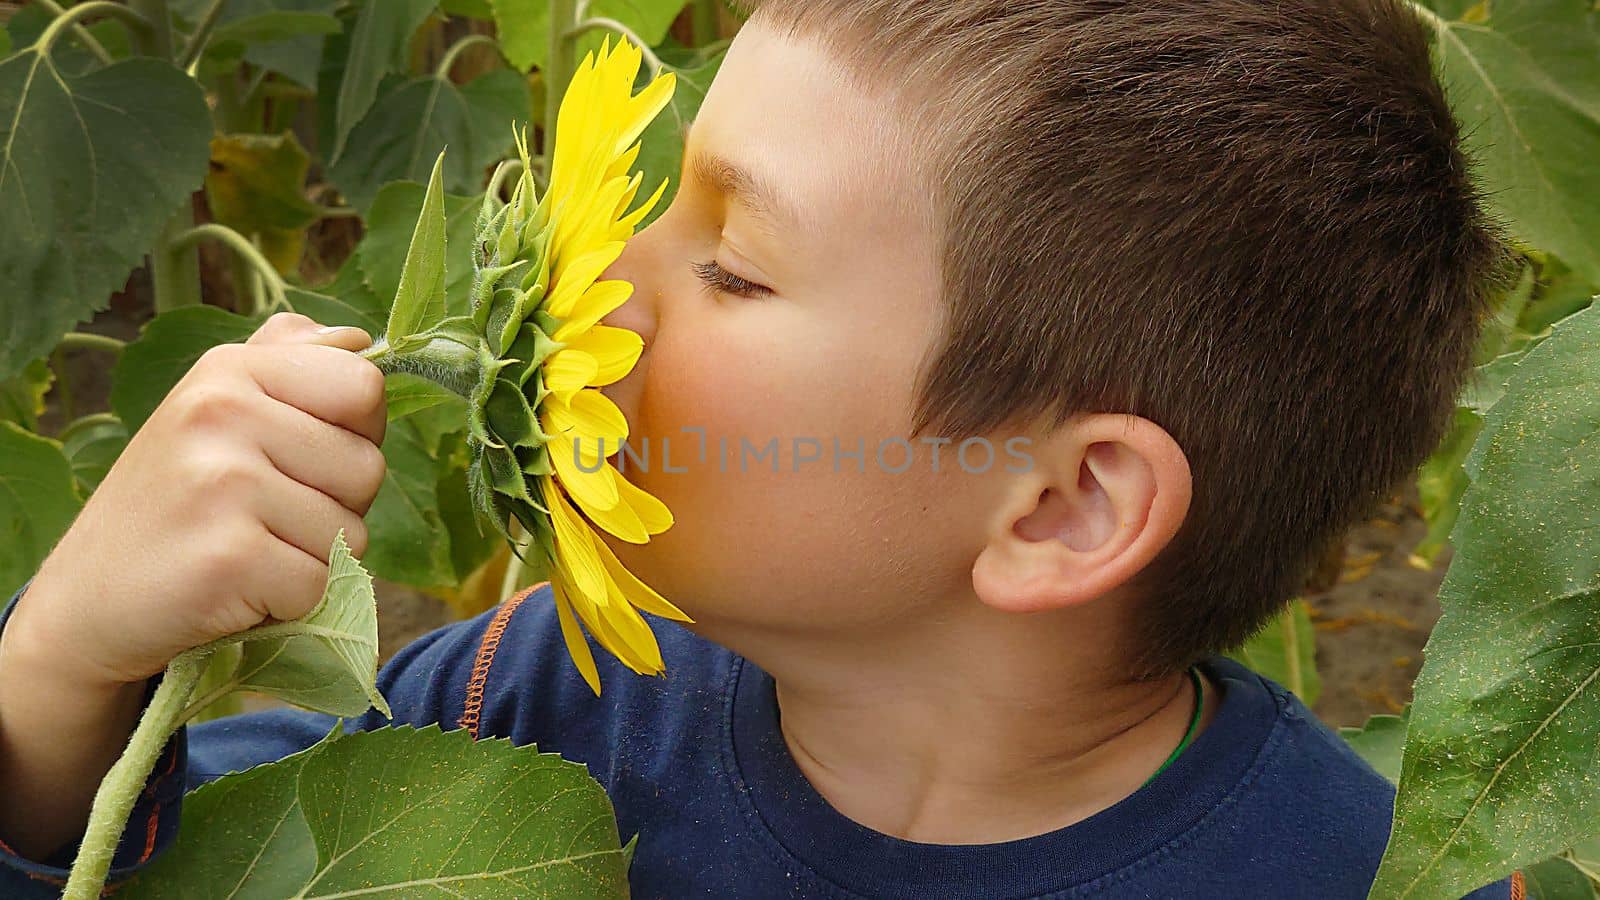 A little boy sniffs a yellow sunflower on a summer day by Mastak80